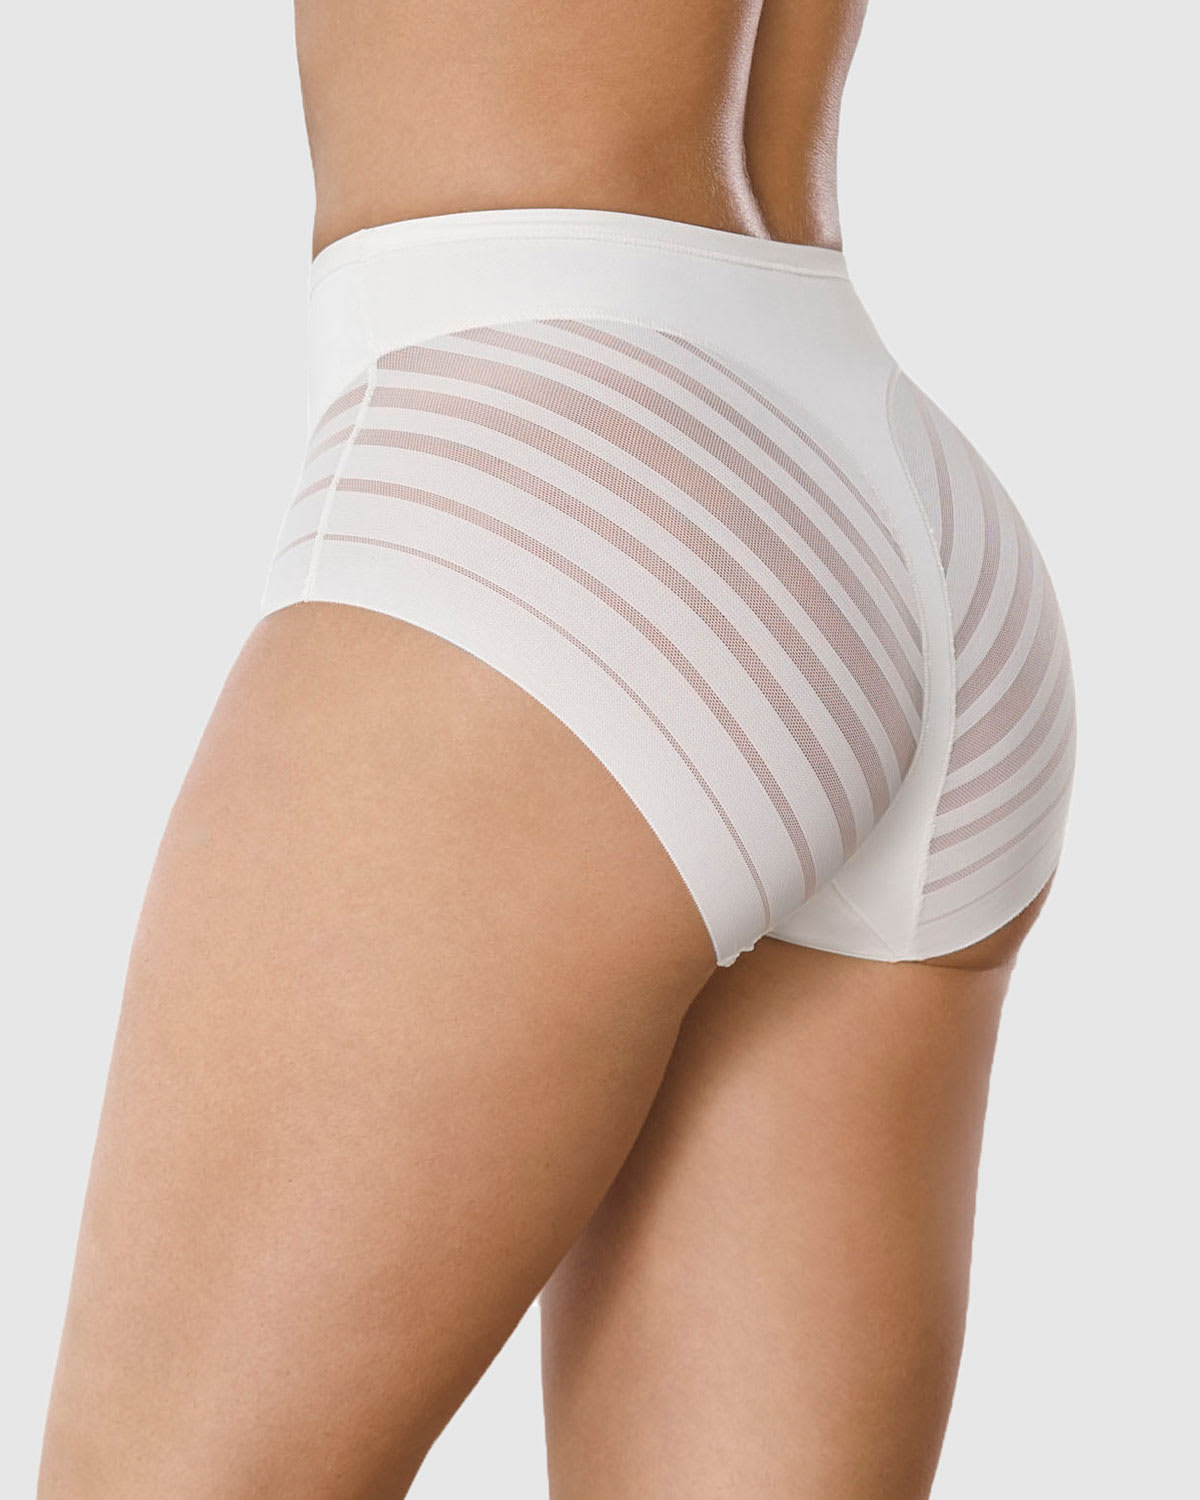 Panty control de abdomen blanco Leonisa - Tiendas Jumbo